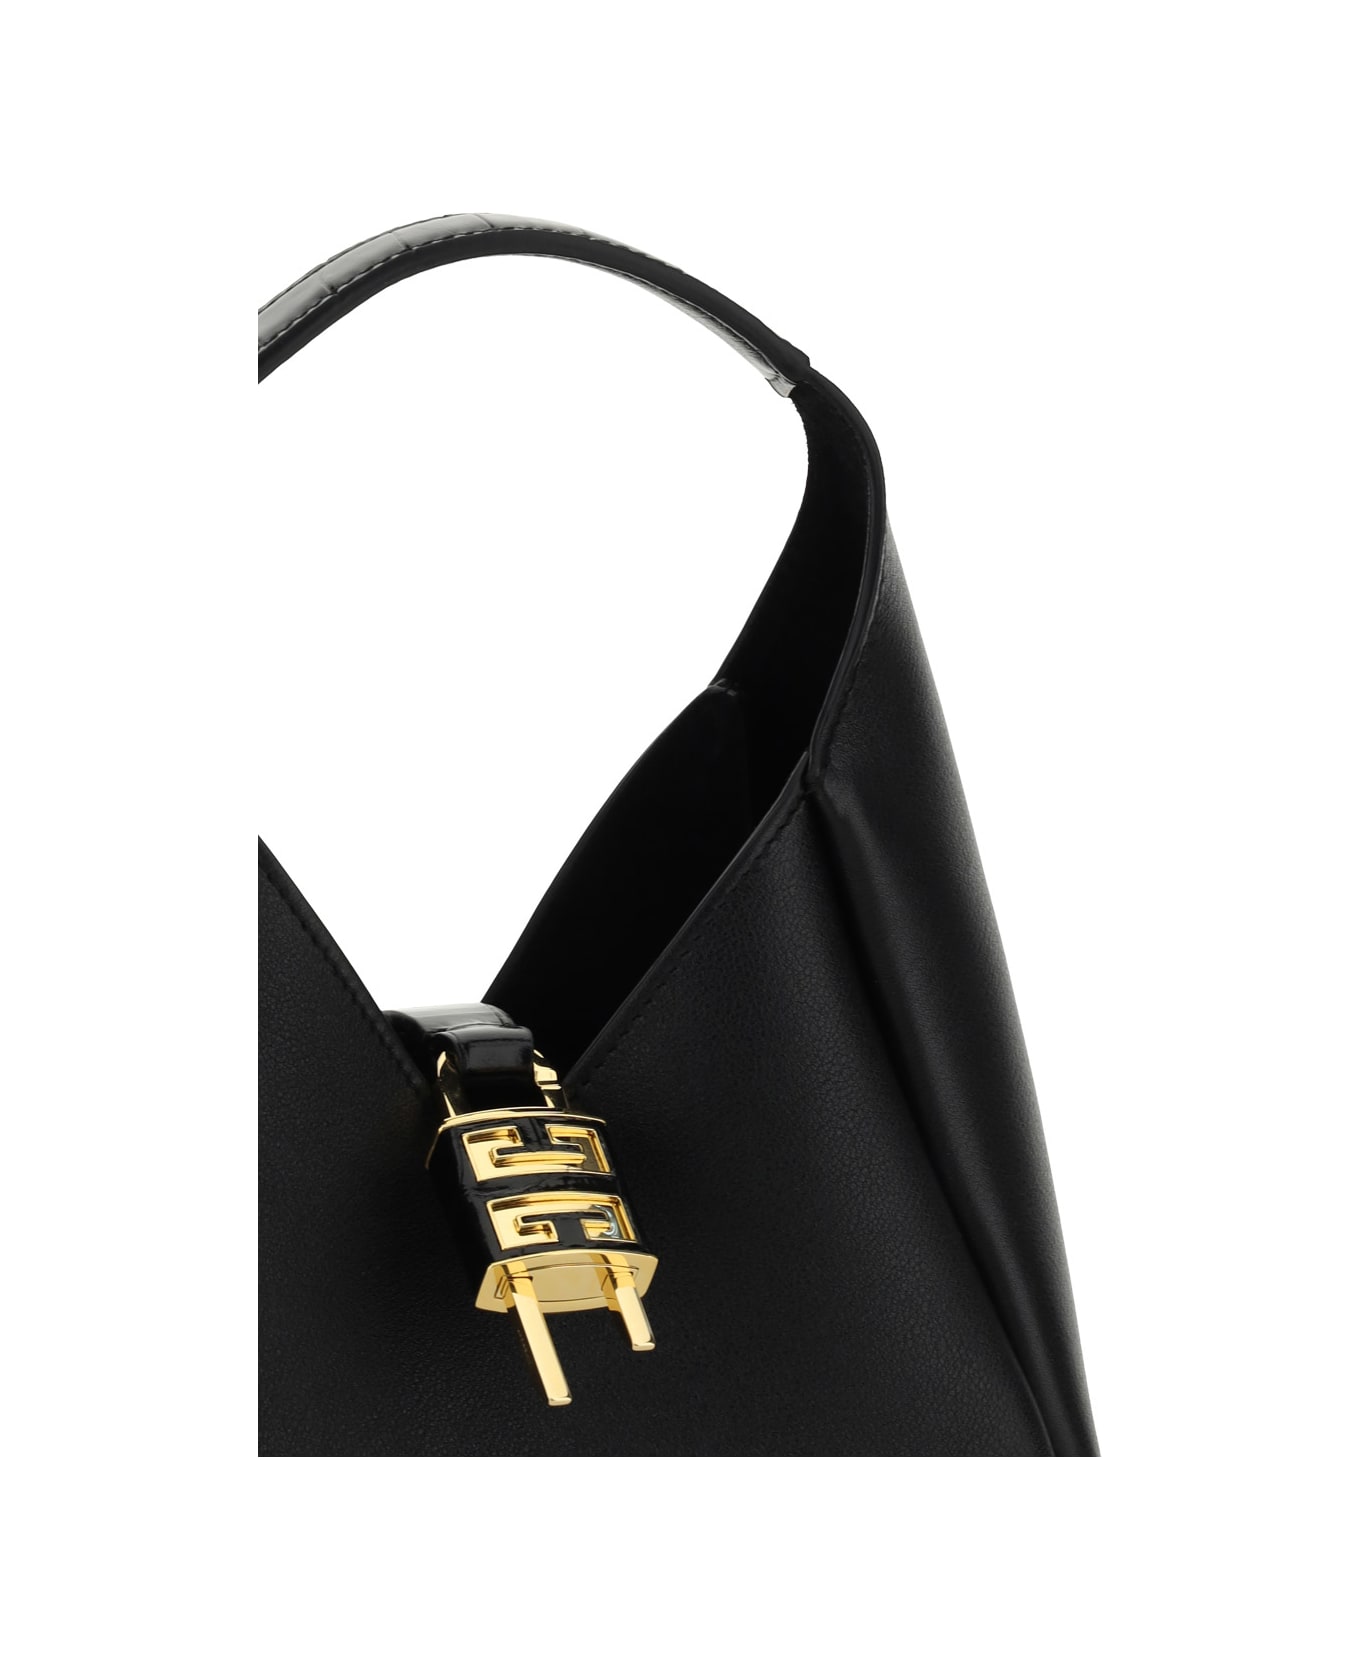 Givenchy G-hobo Leather Mini Handbag - Black